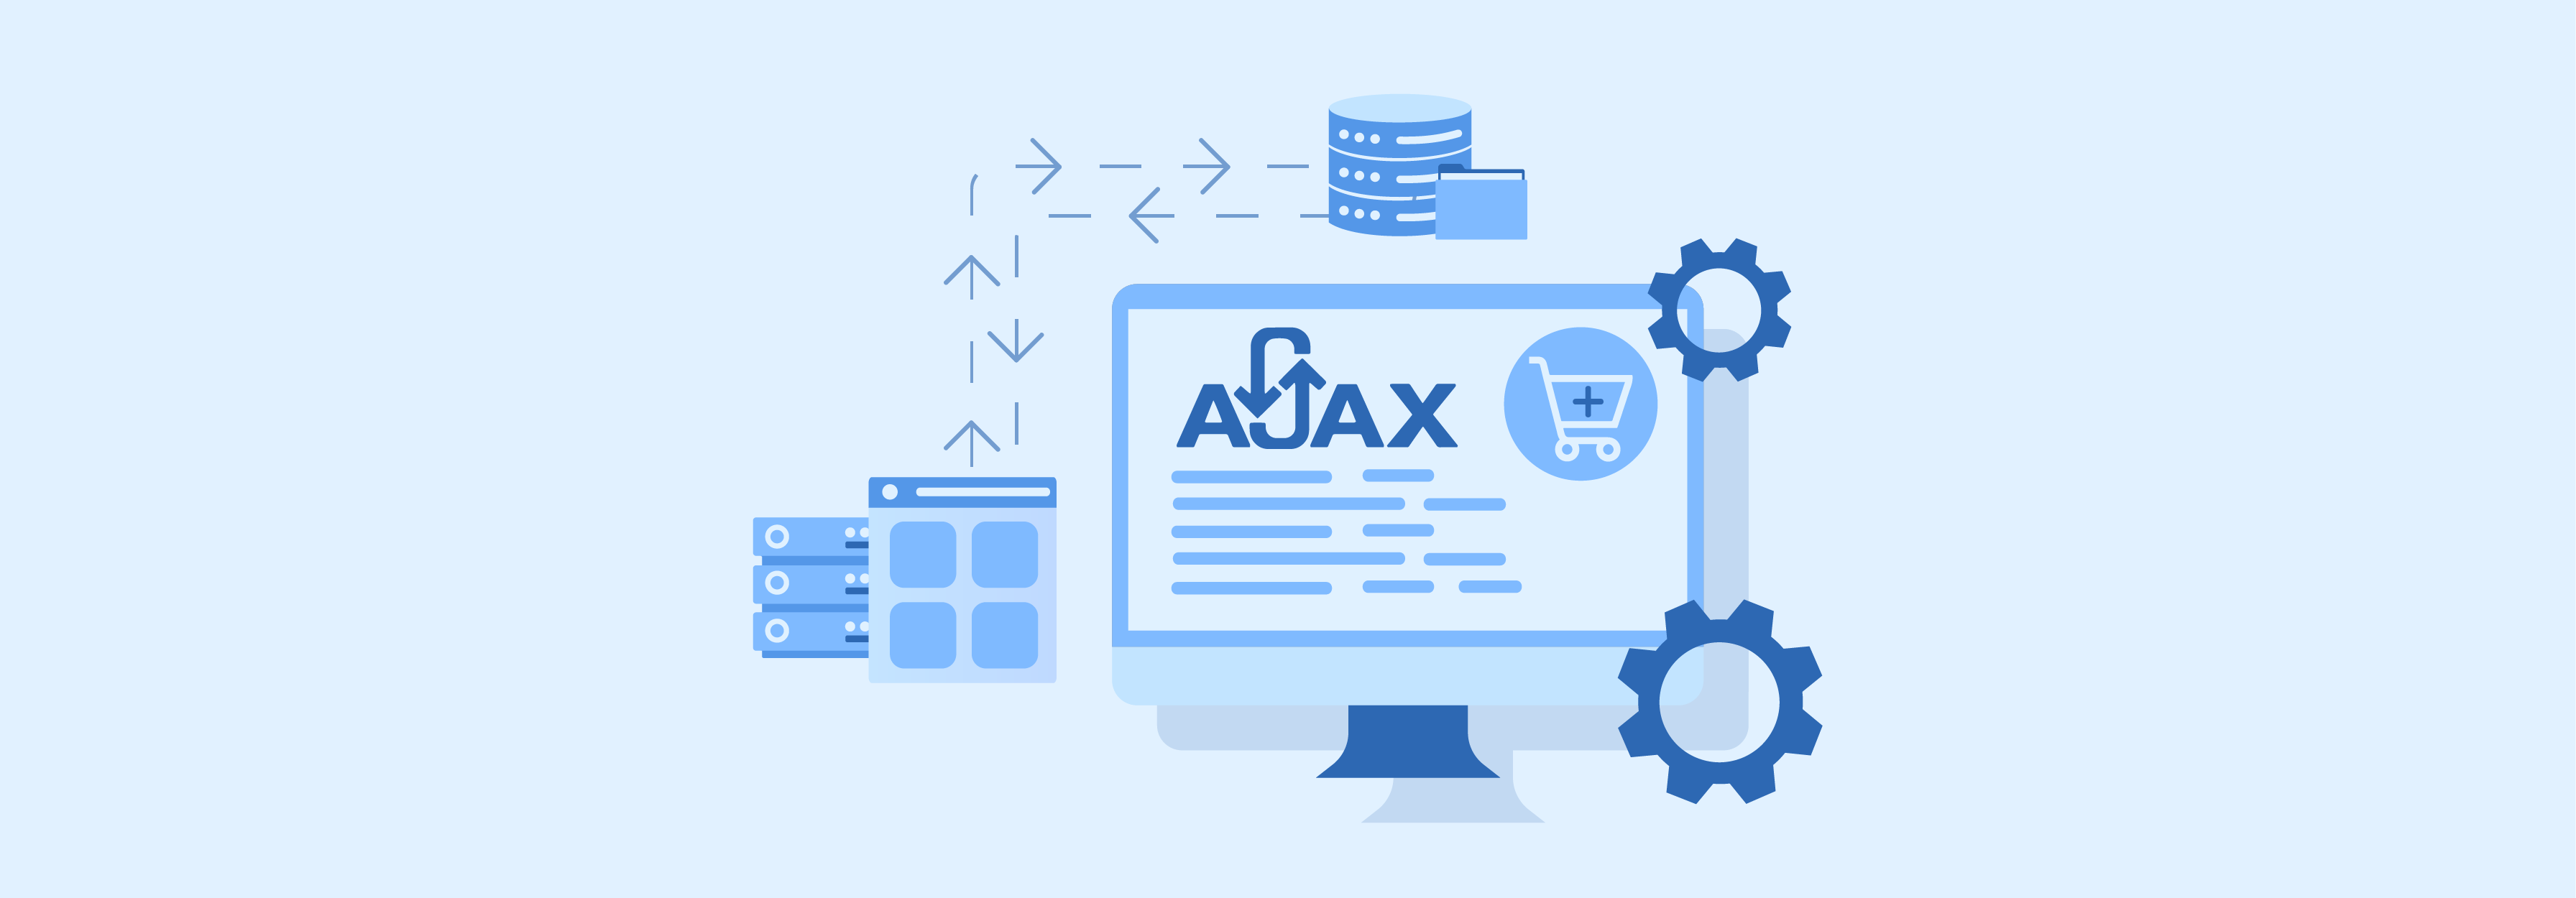 Understanding Ajax